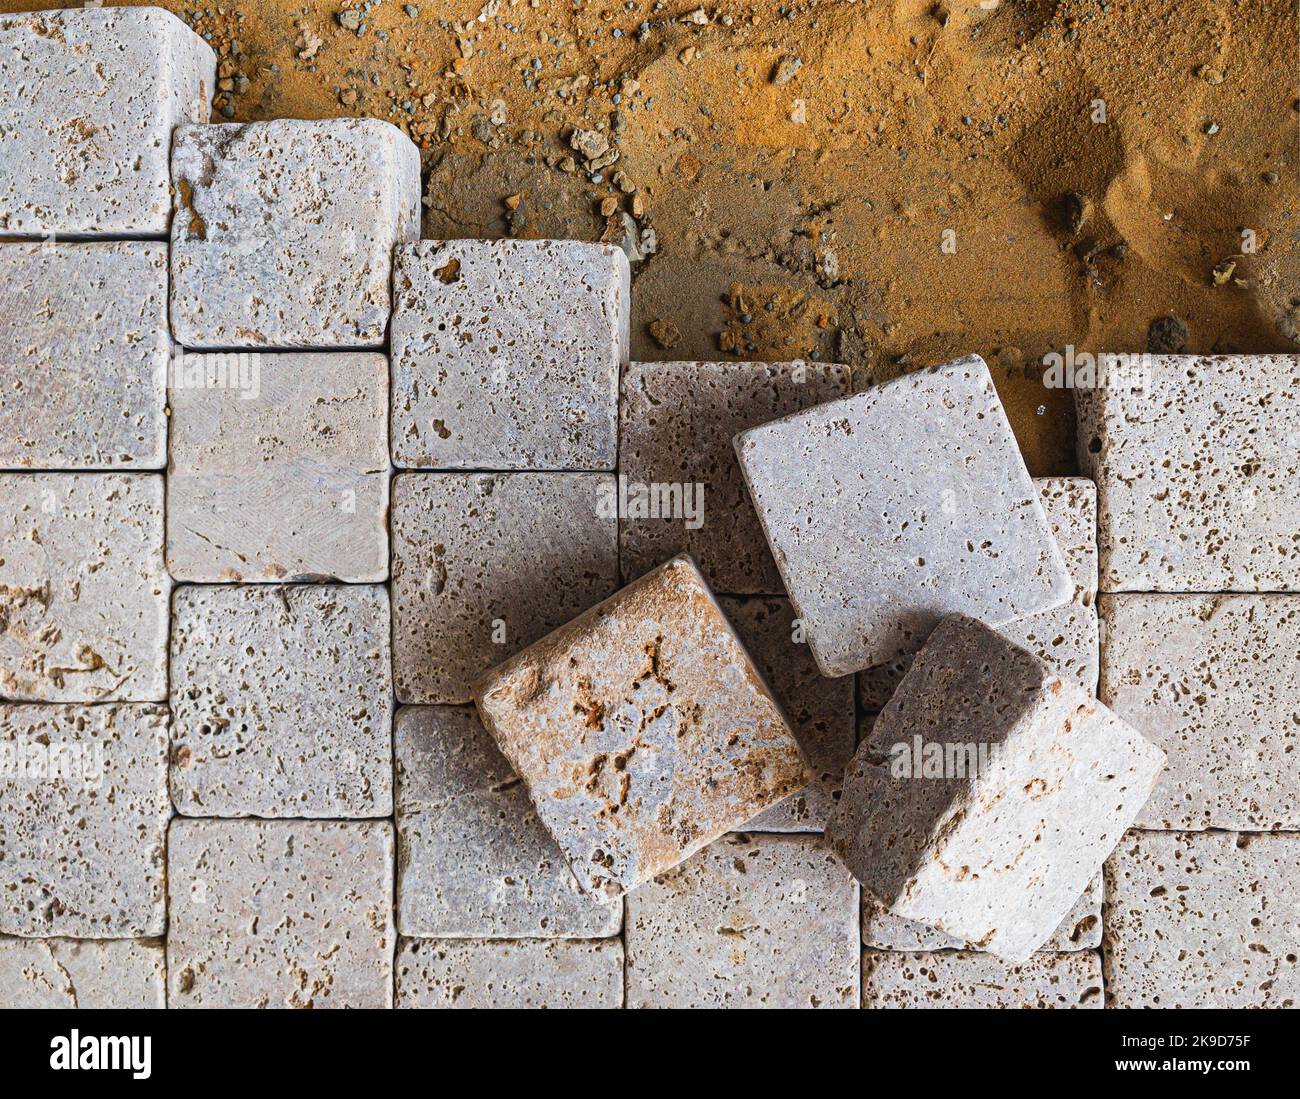 pavement pavestone paving bricks stone bricks placing, sidewalk works Stock Photo